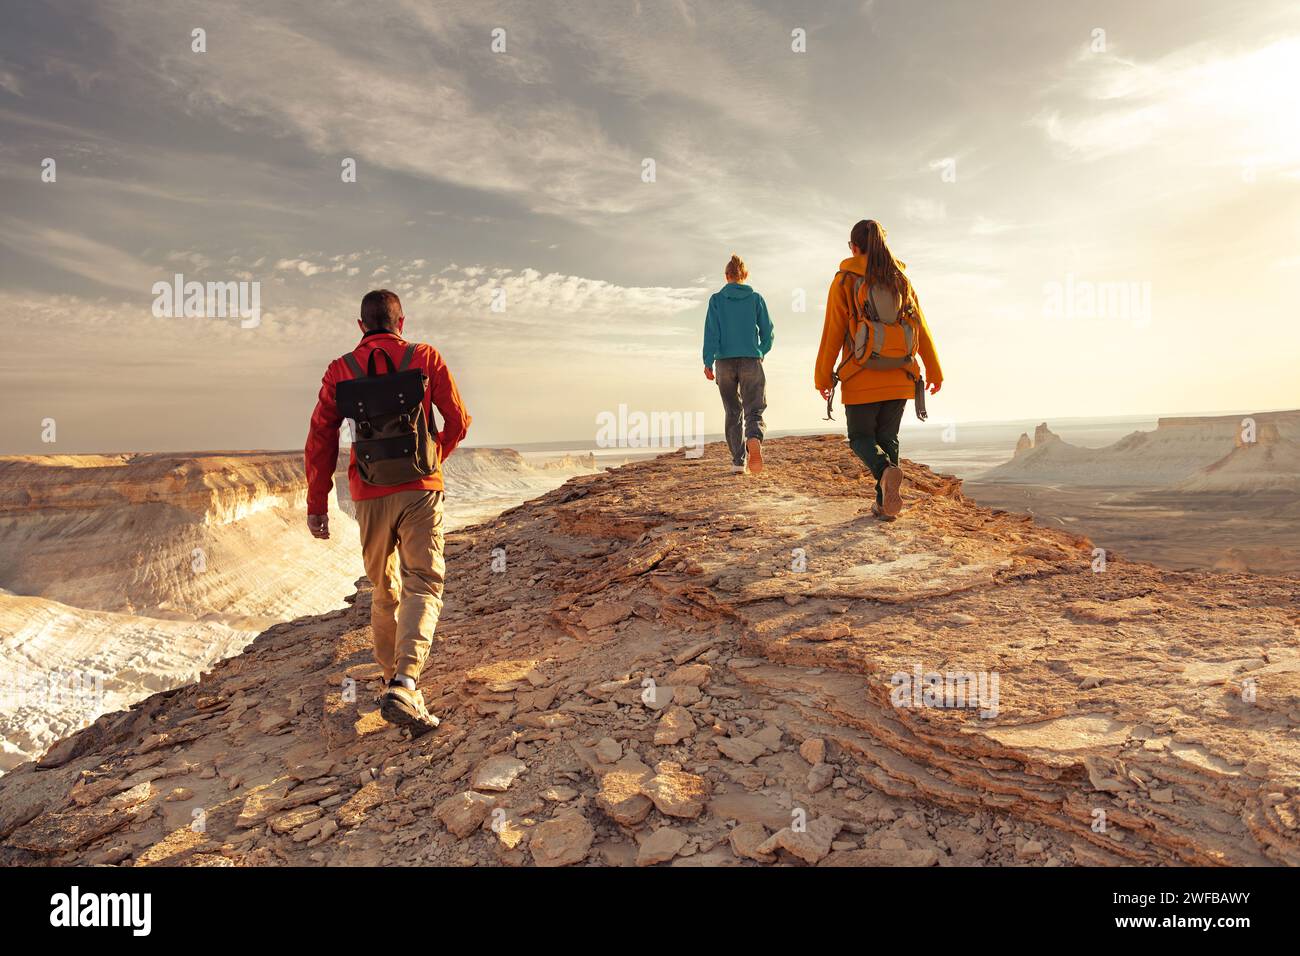 Trois jeunes touristes avec des sacs à dos marchent au sommet de la montagne coucher du soleil avec une vue impressionnante Banque D'Images